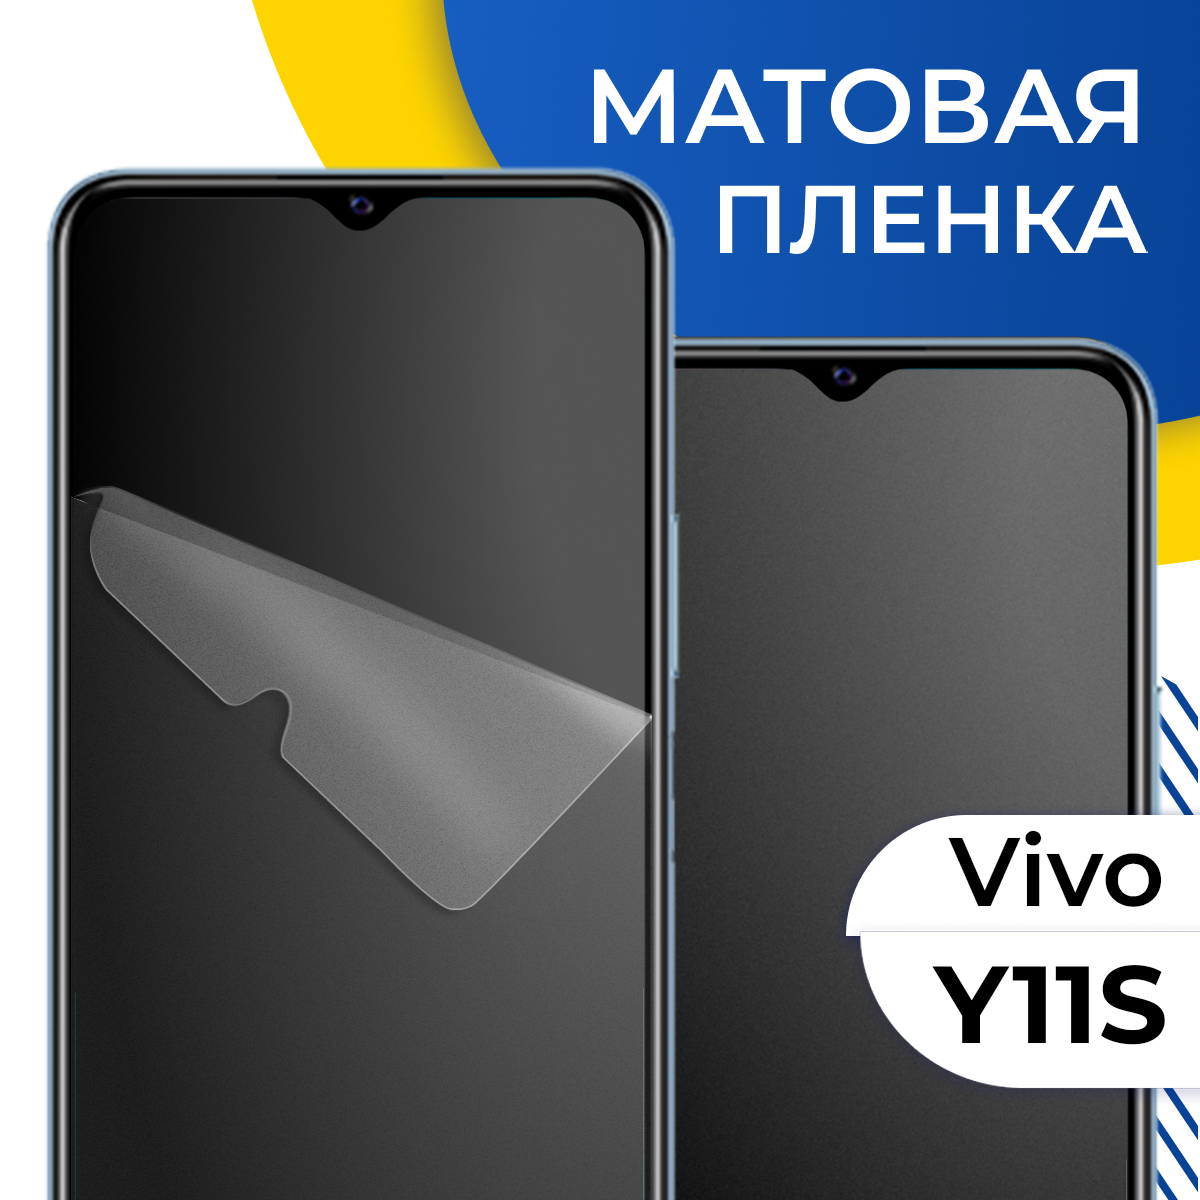 Комплект 2 шт. Матовая гидрогелевая пленка для телефона Vivo Y11S / Самовосстанавливающаяся защитная пленка на смартфон Виво У11С / Противоударная